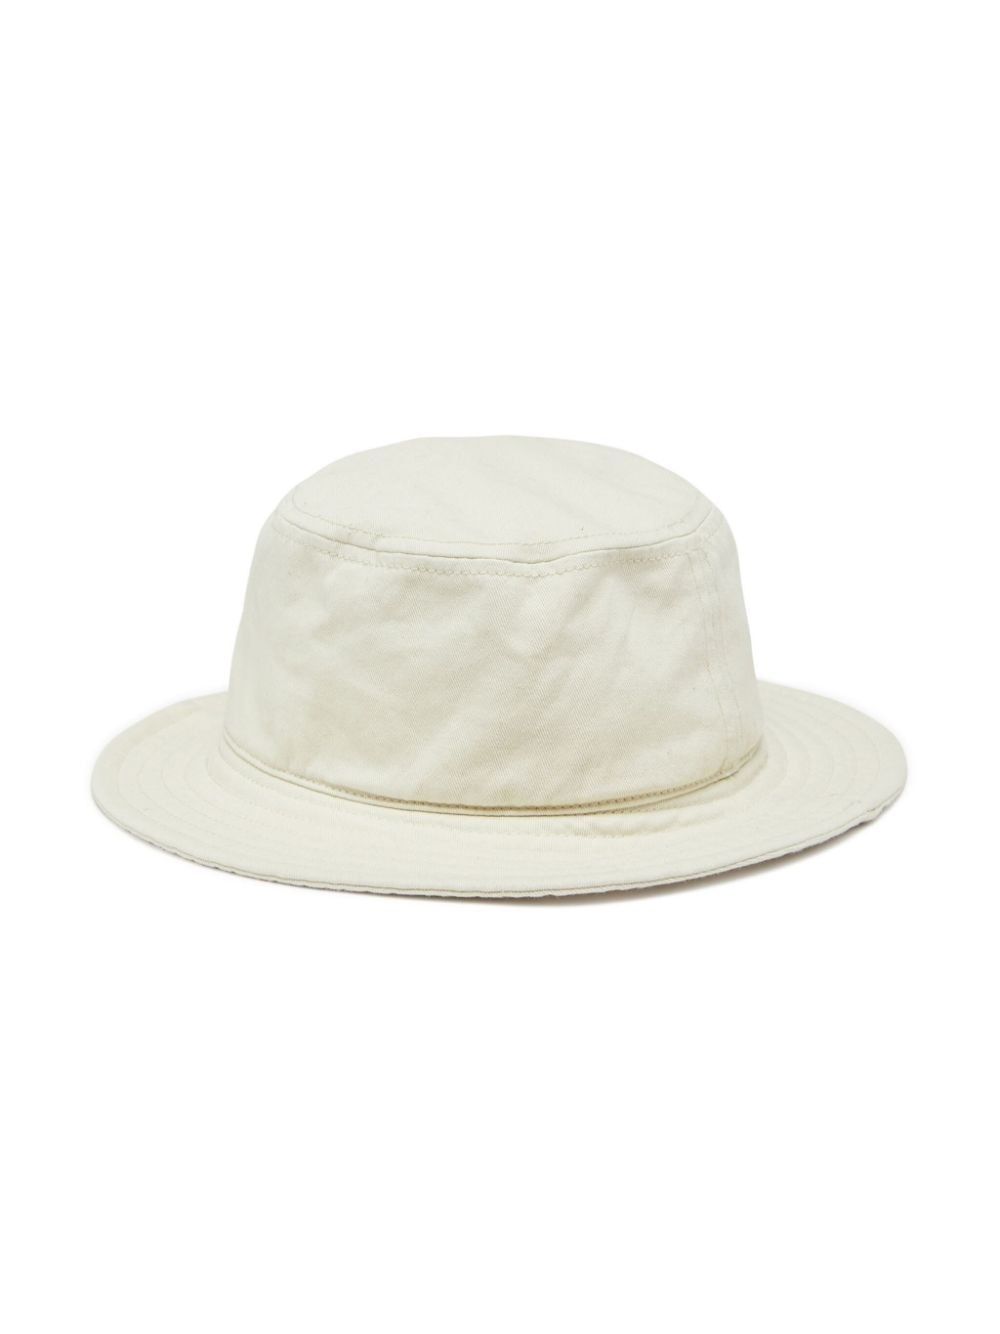 C-FISHER-WASH bucket hat - 2